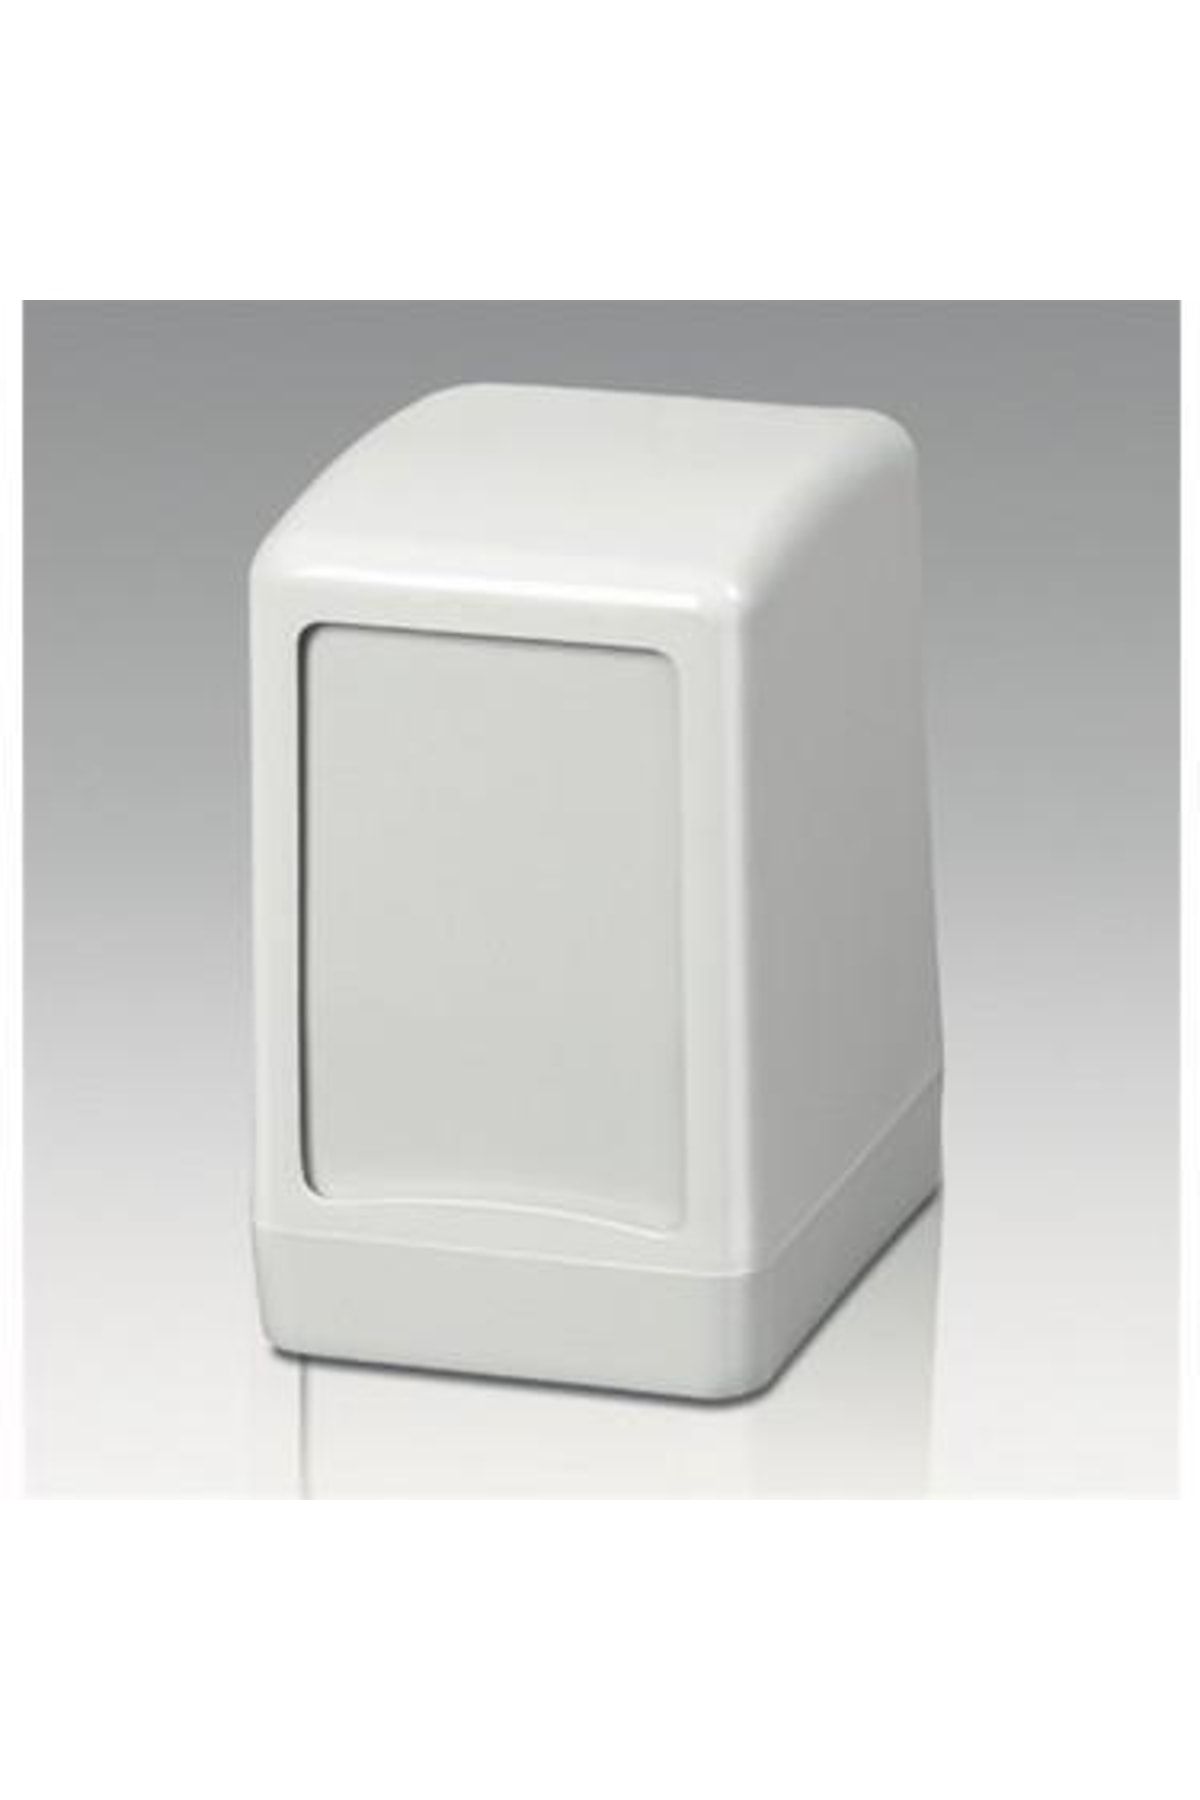 Leva Gül Dispenser Peçete Aparatı Beyaz Ağır Lm-2080